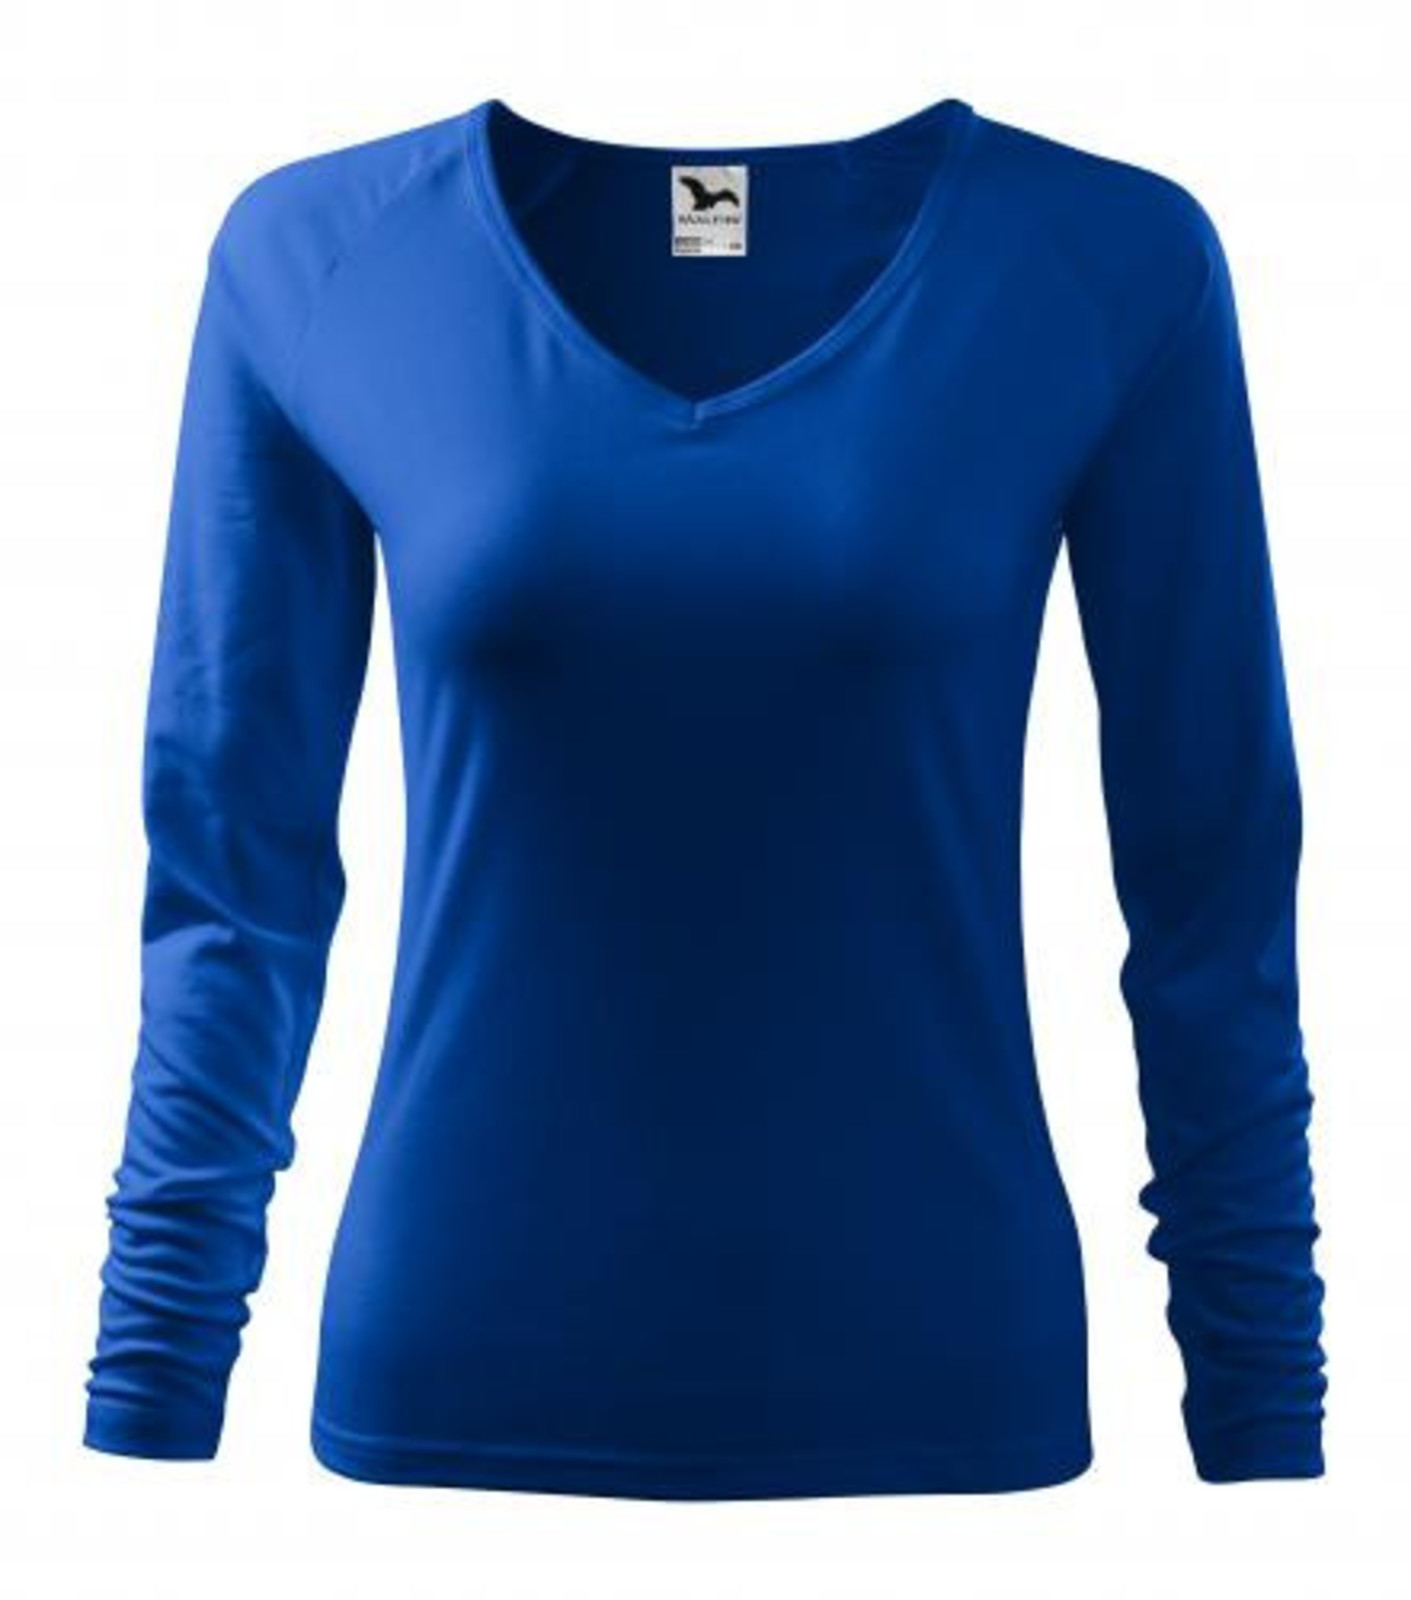 Dámske tričko s dlhým rukávom Adler Elegance 127 - veľkosť: L, farba: kráľovská modrá